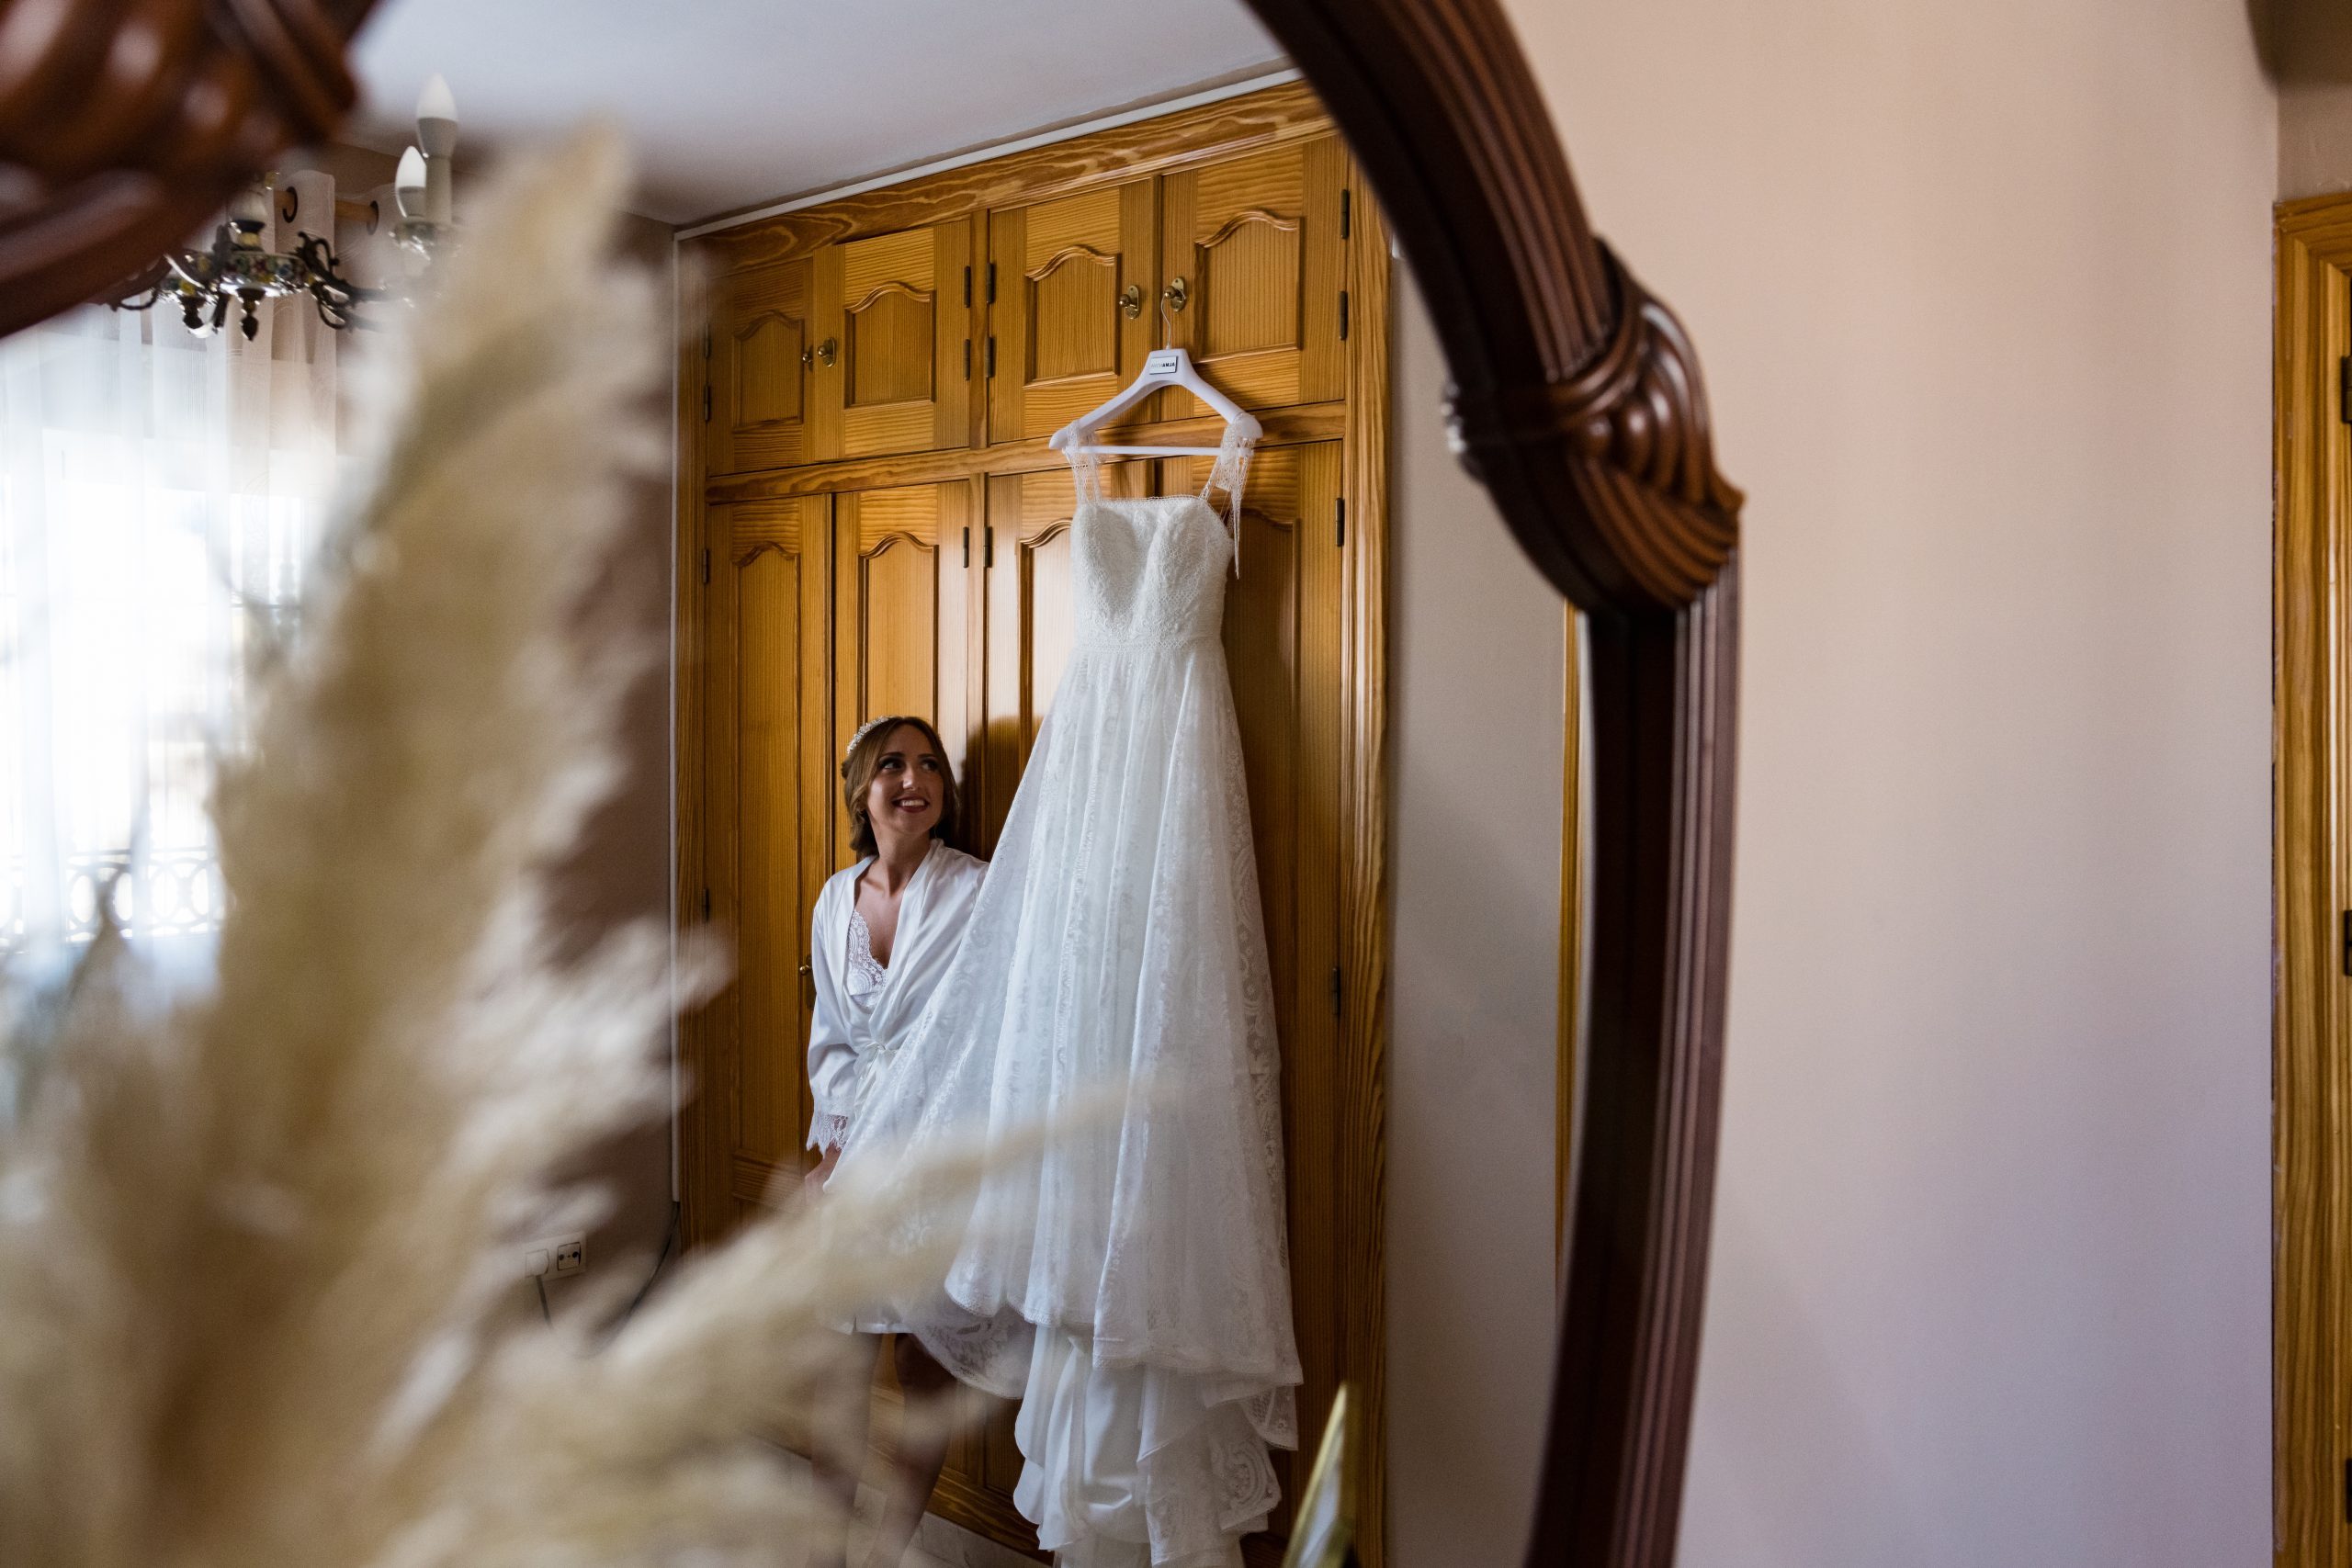 Foto de la novia alegre reflejada en el espejo mirando su vestido colgado del armario